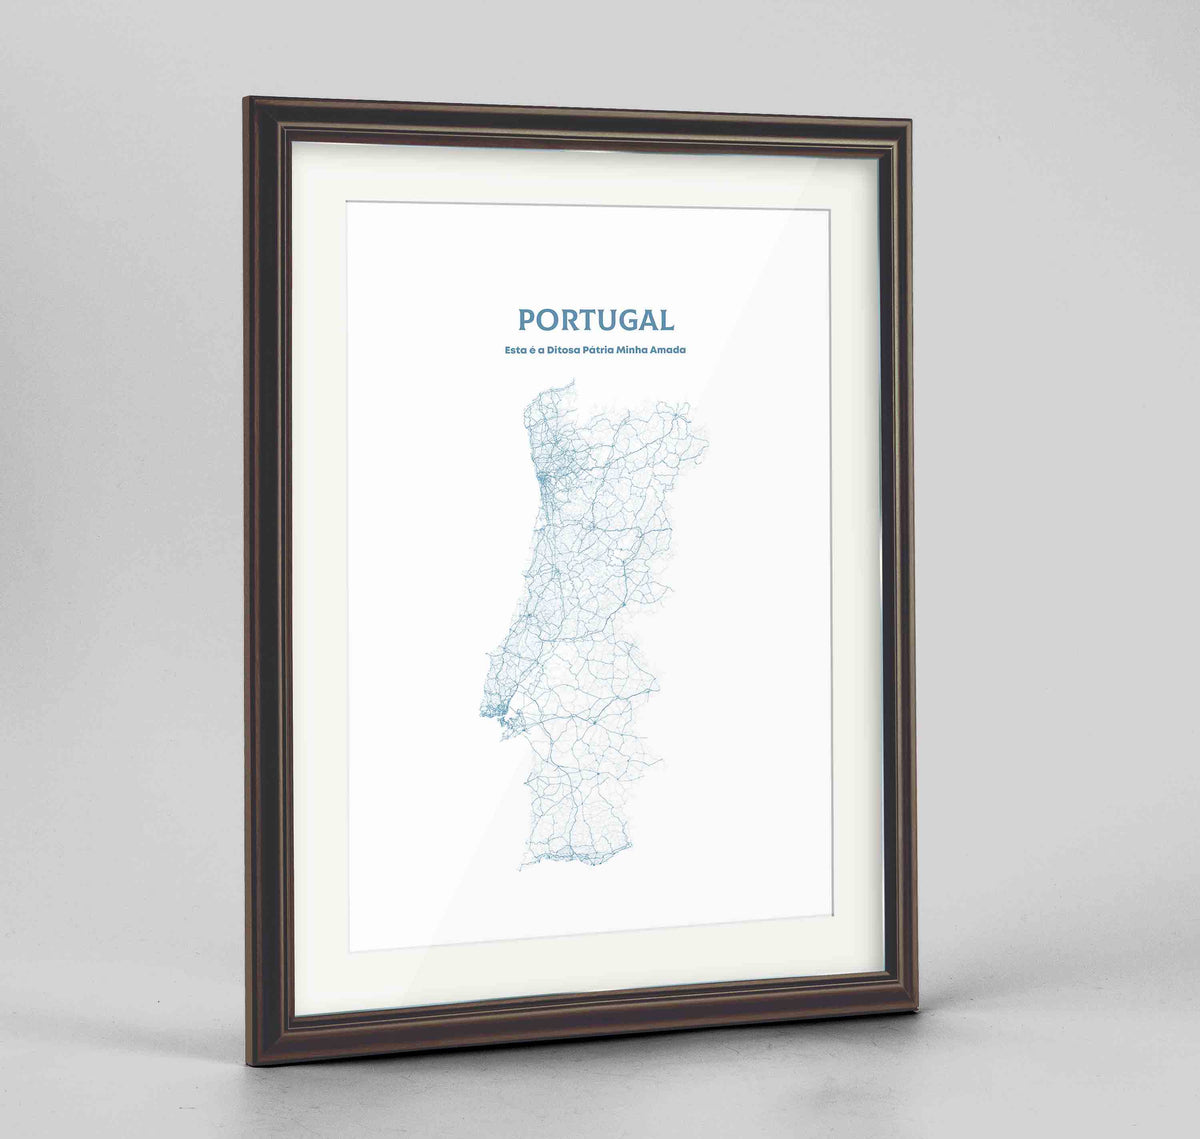 Portugal - All Roads Art Print - Framed